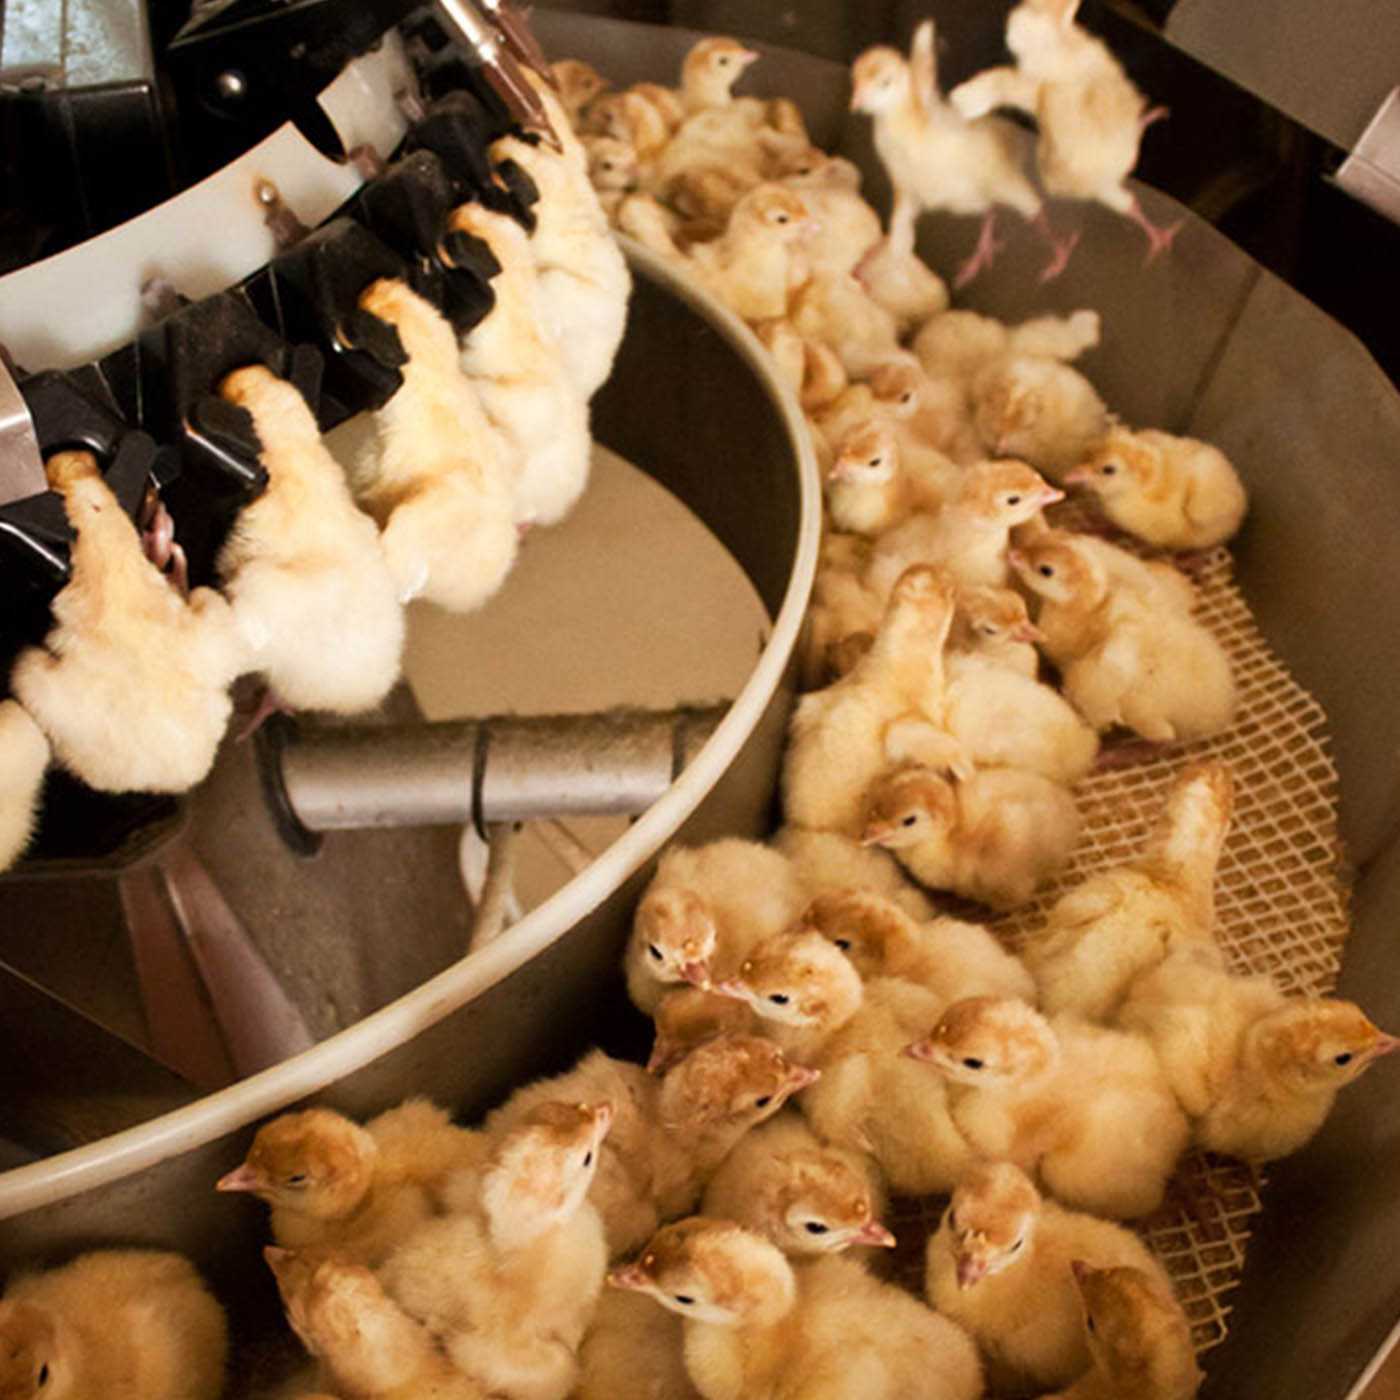 Debeaking of turkeys in a hatchery